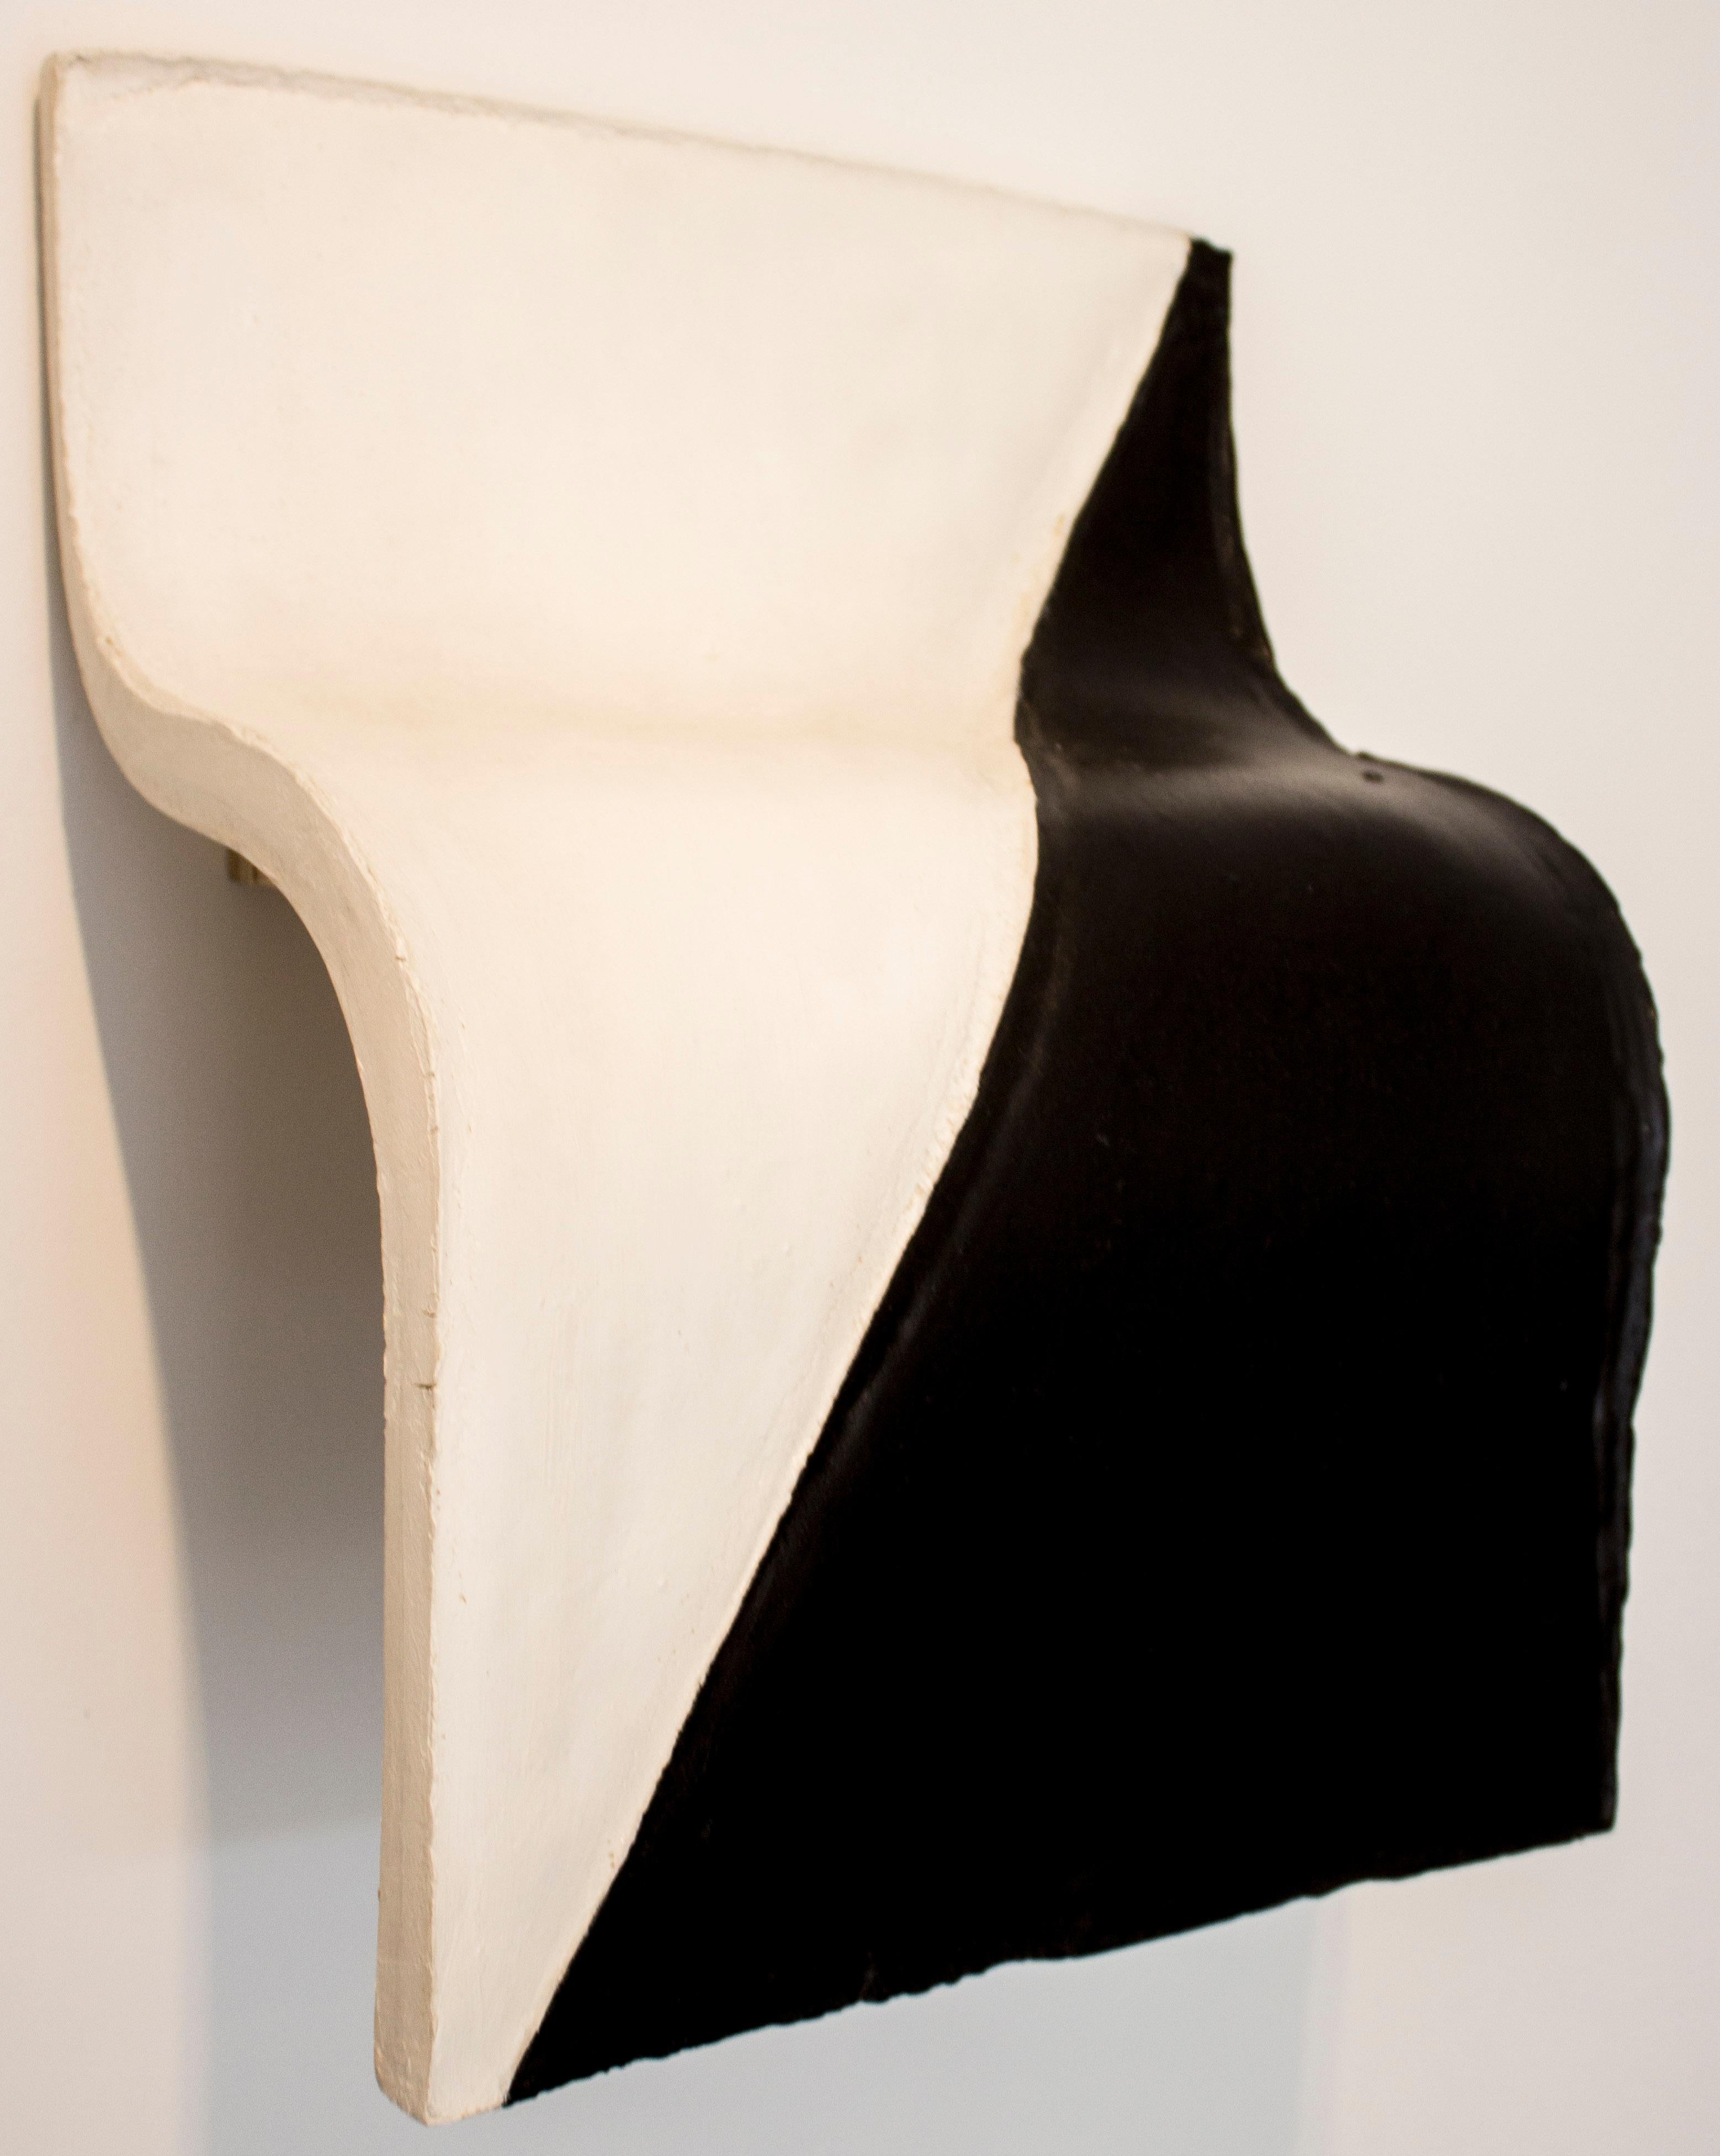 Eduardo Costa Abstract Painting - Bicromo blando blanco y negro en diagonal